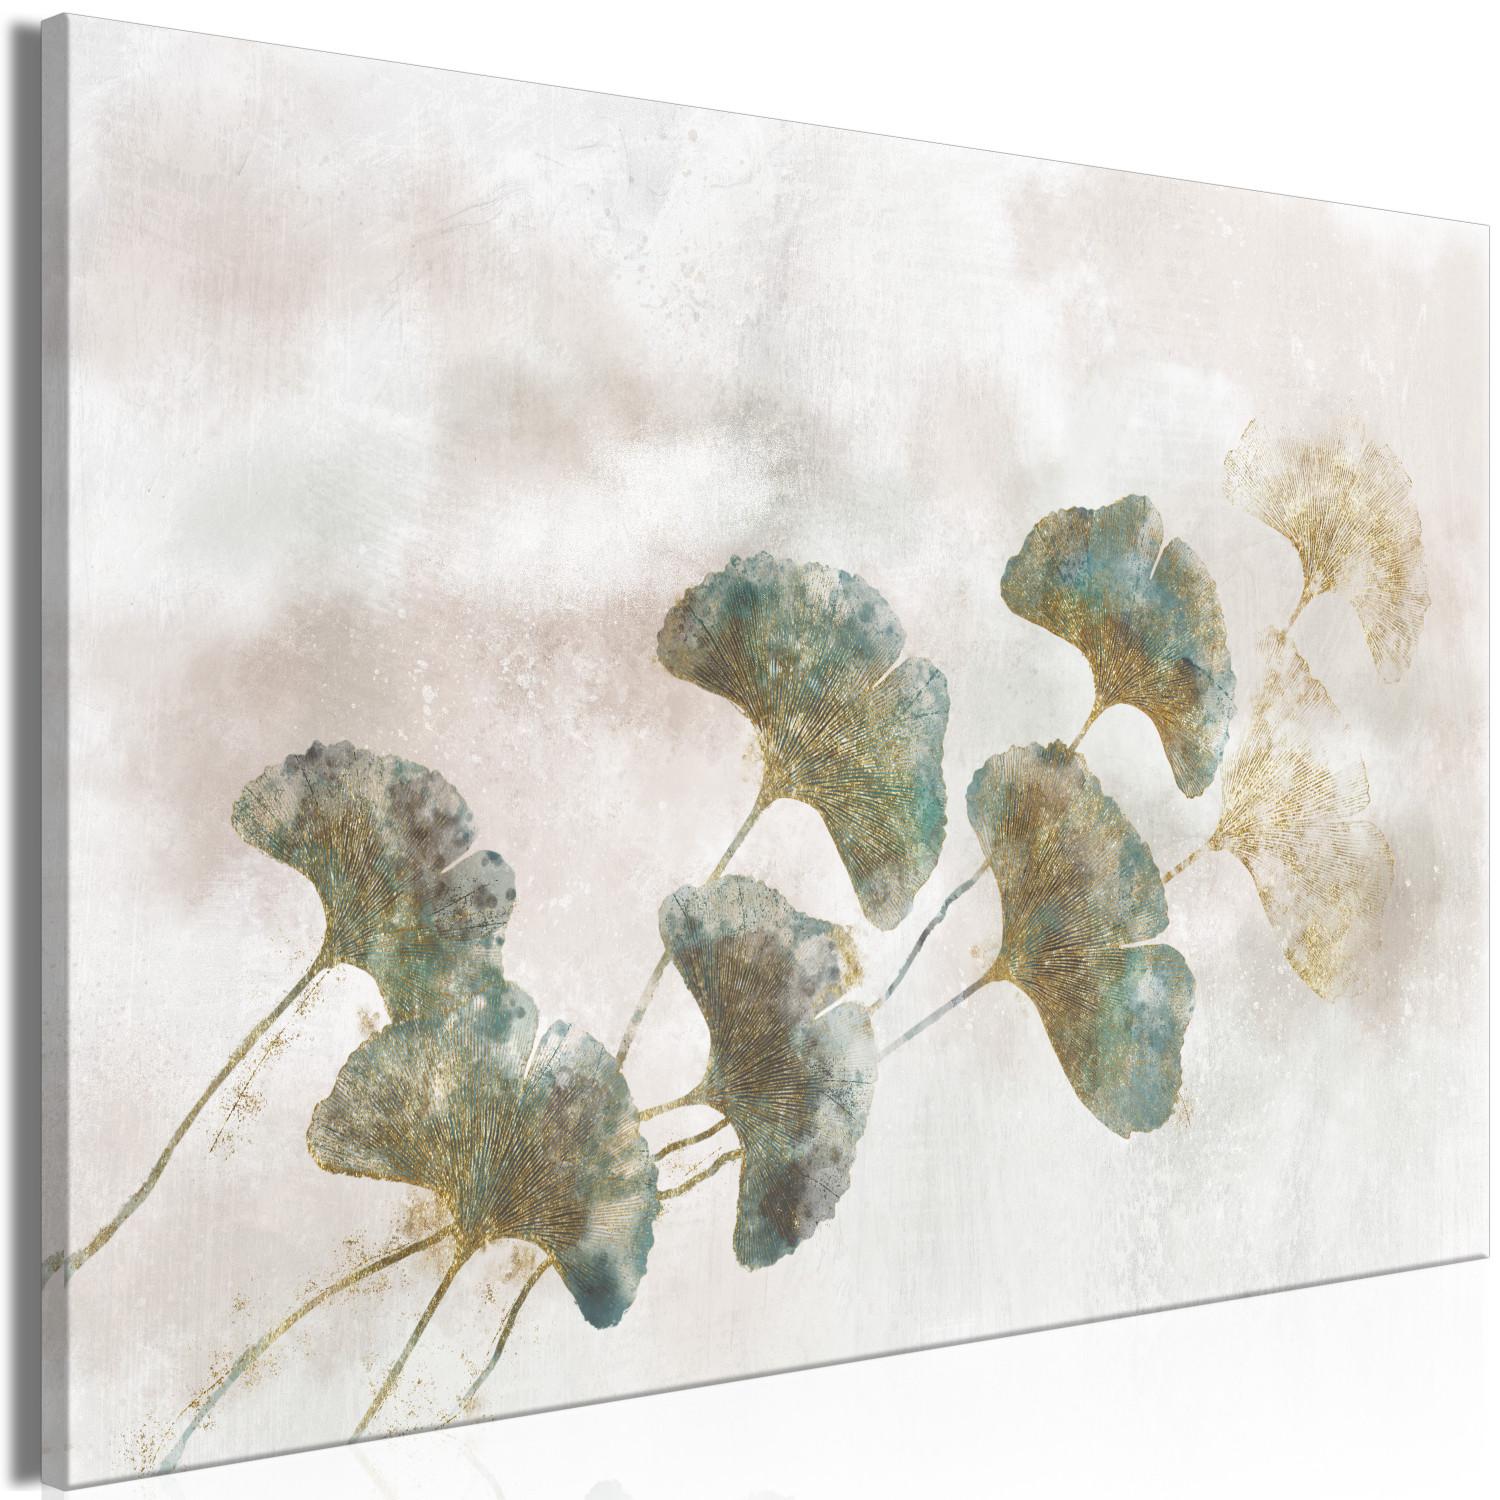 Canvas Ginkgo in Sunlight (1-piece) Wide - plants in boho style